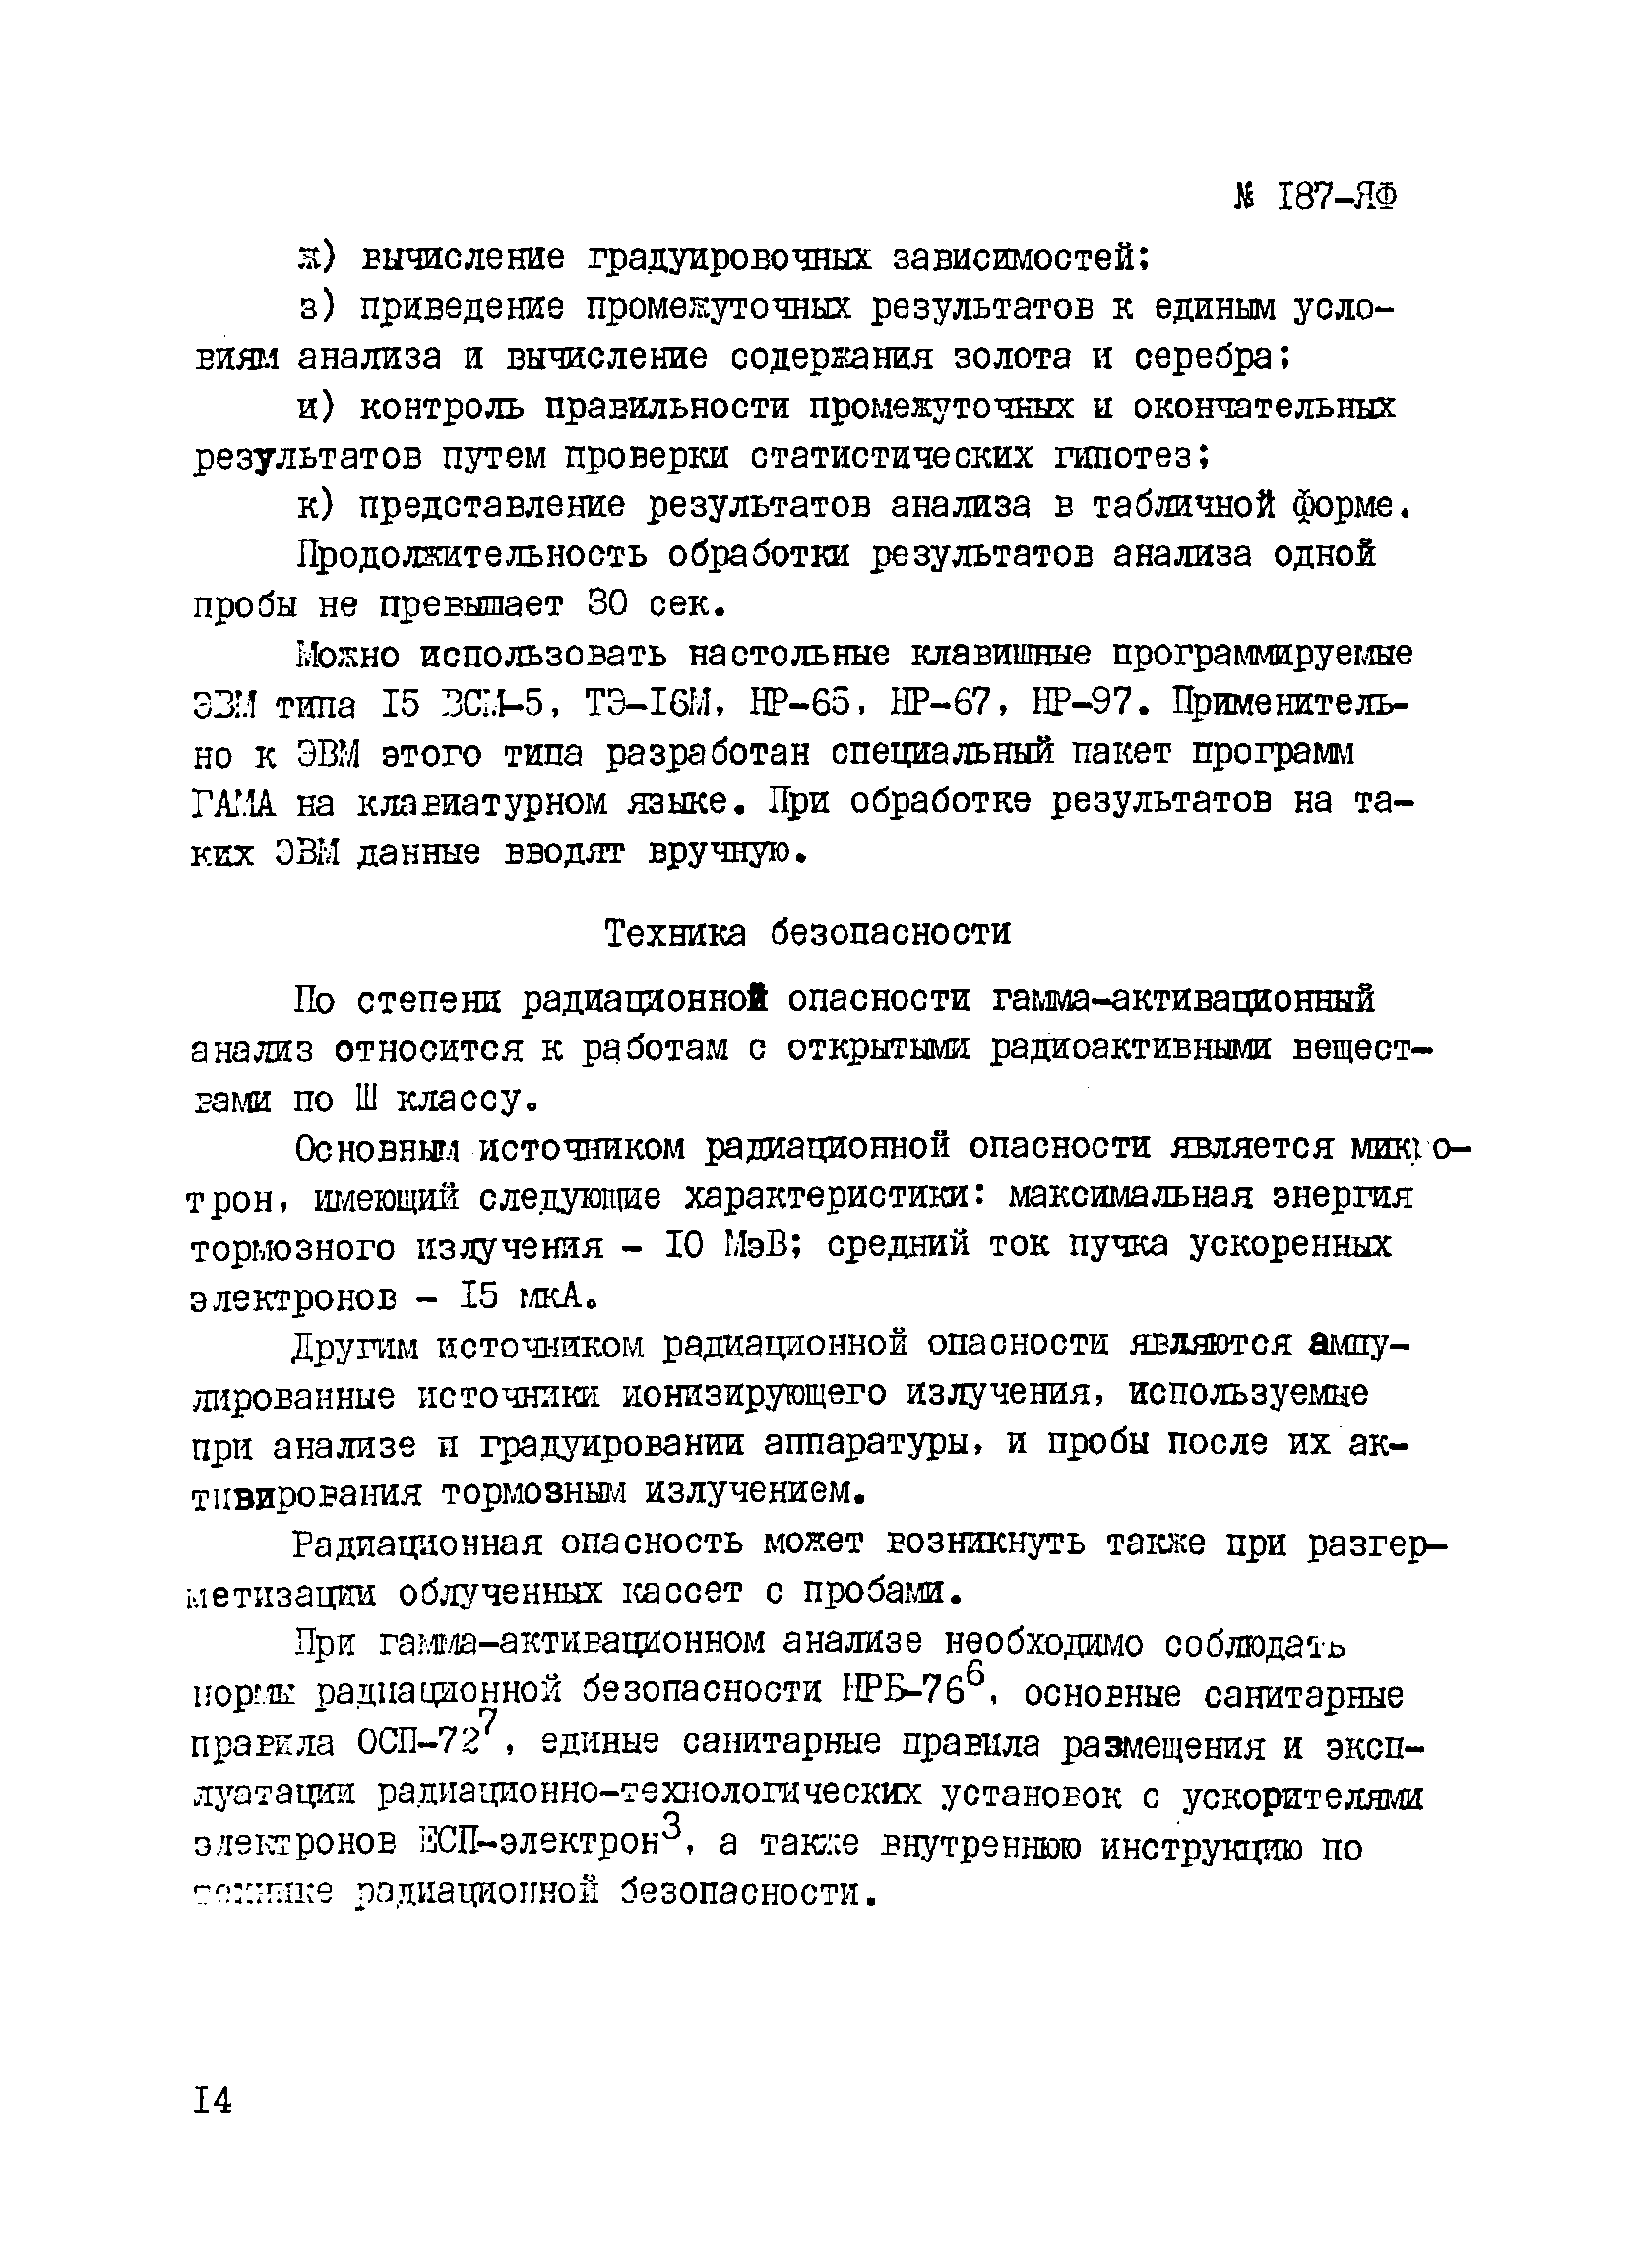 Инструкция НСАМ 187-ЯФ